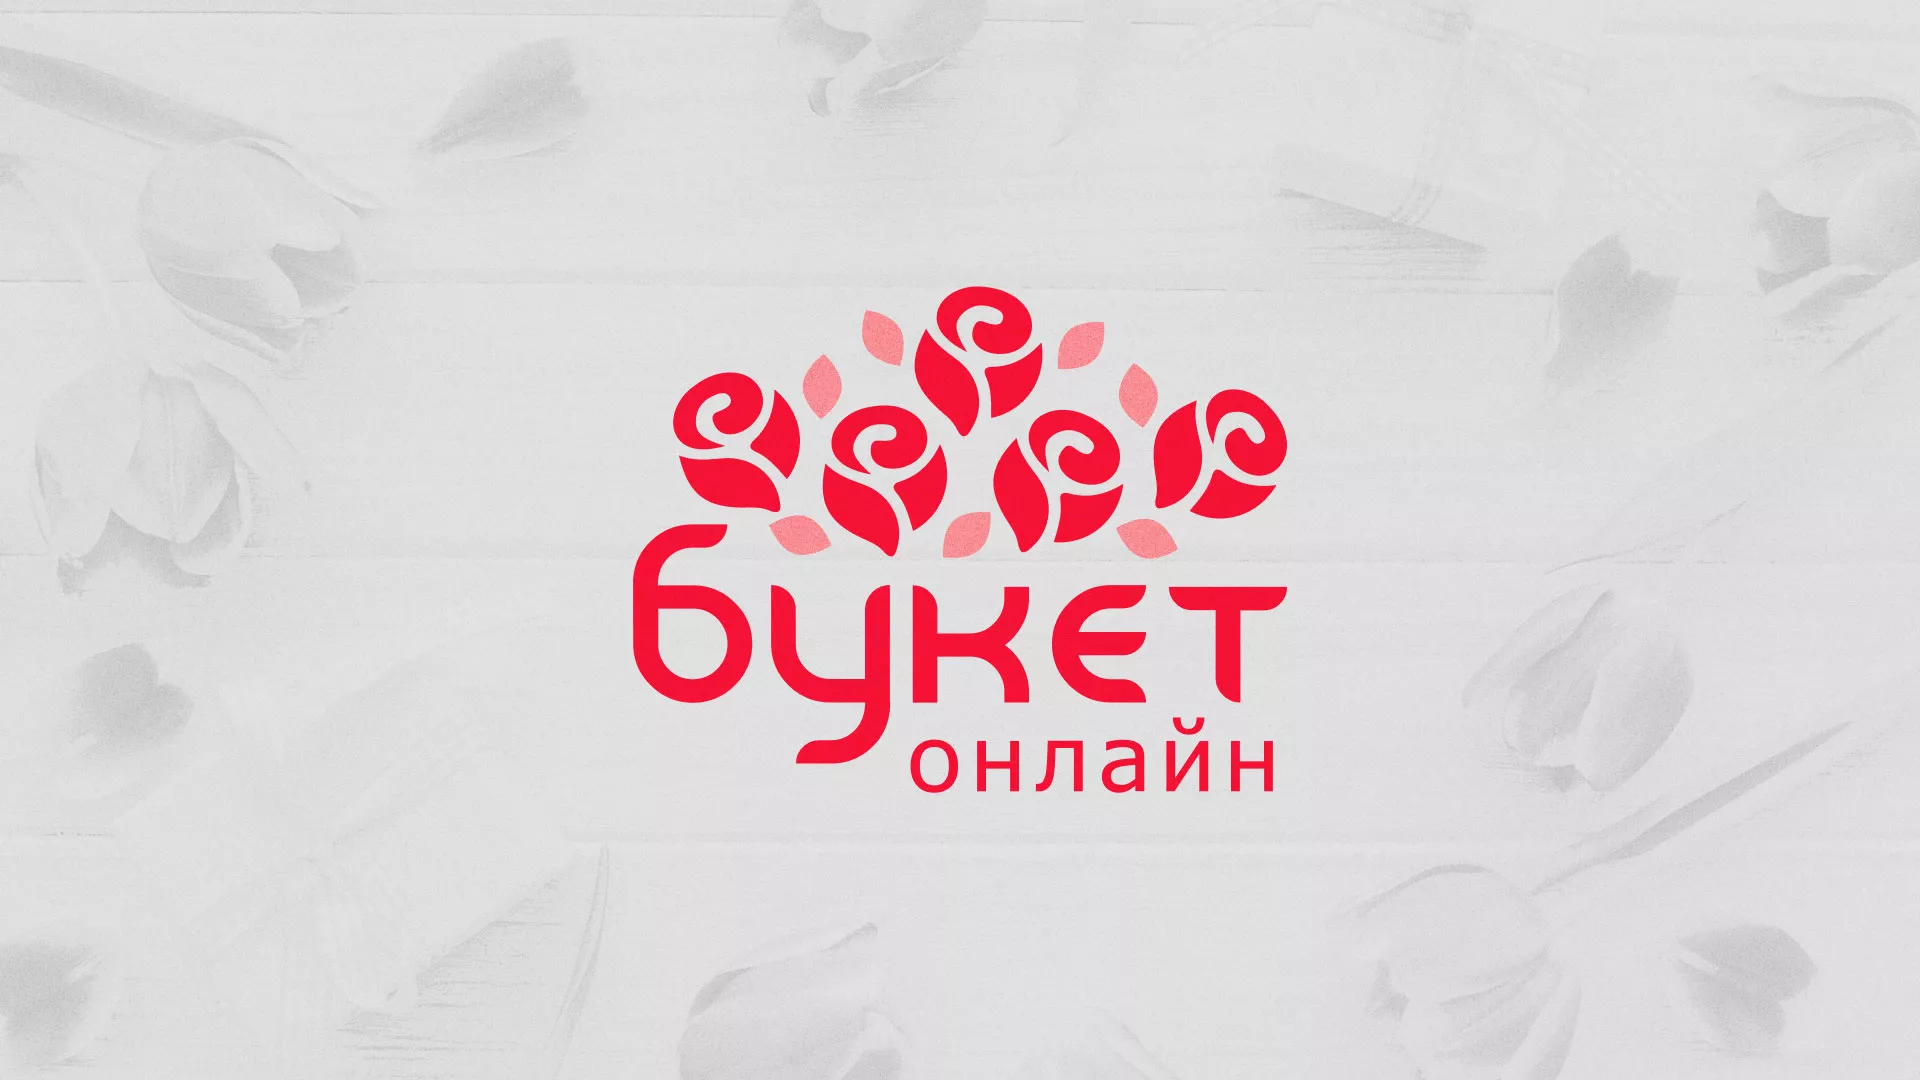 Создание интернет-магазина «Букет-онлайн» по цветам в Рубцовске